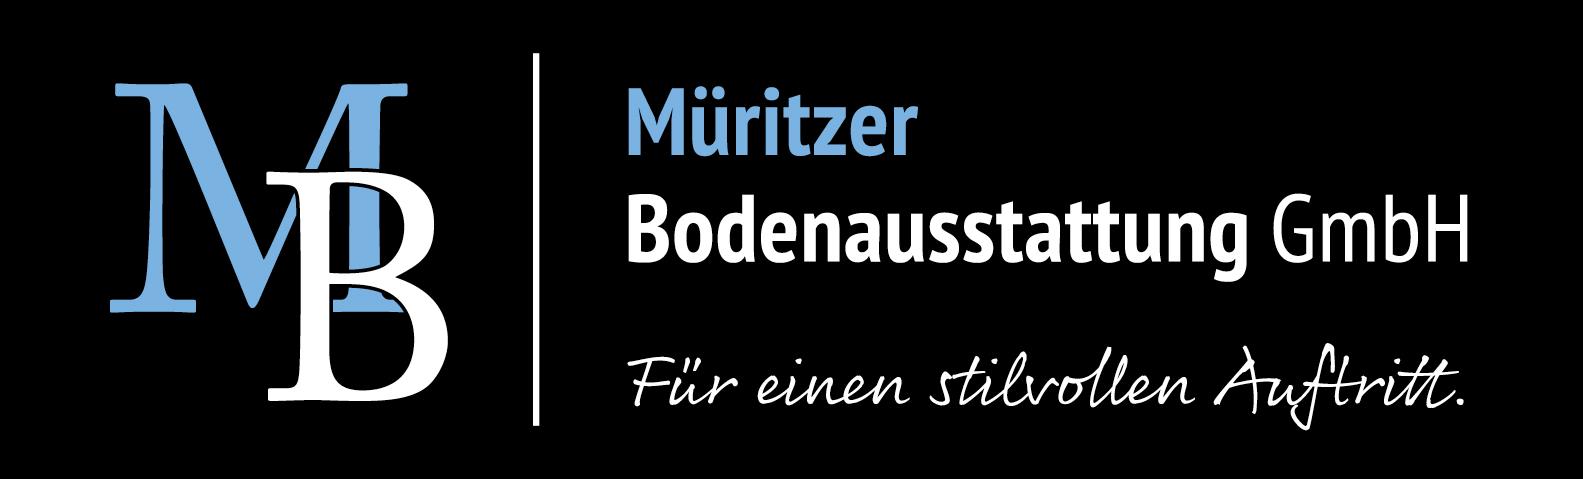 Müritzer Bodenausstattung GmbH